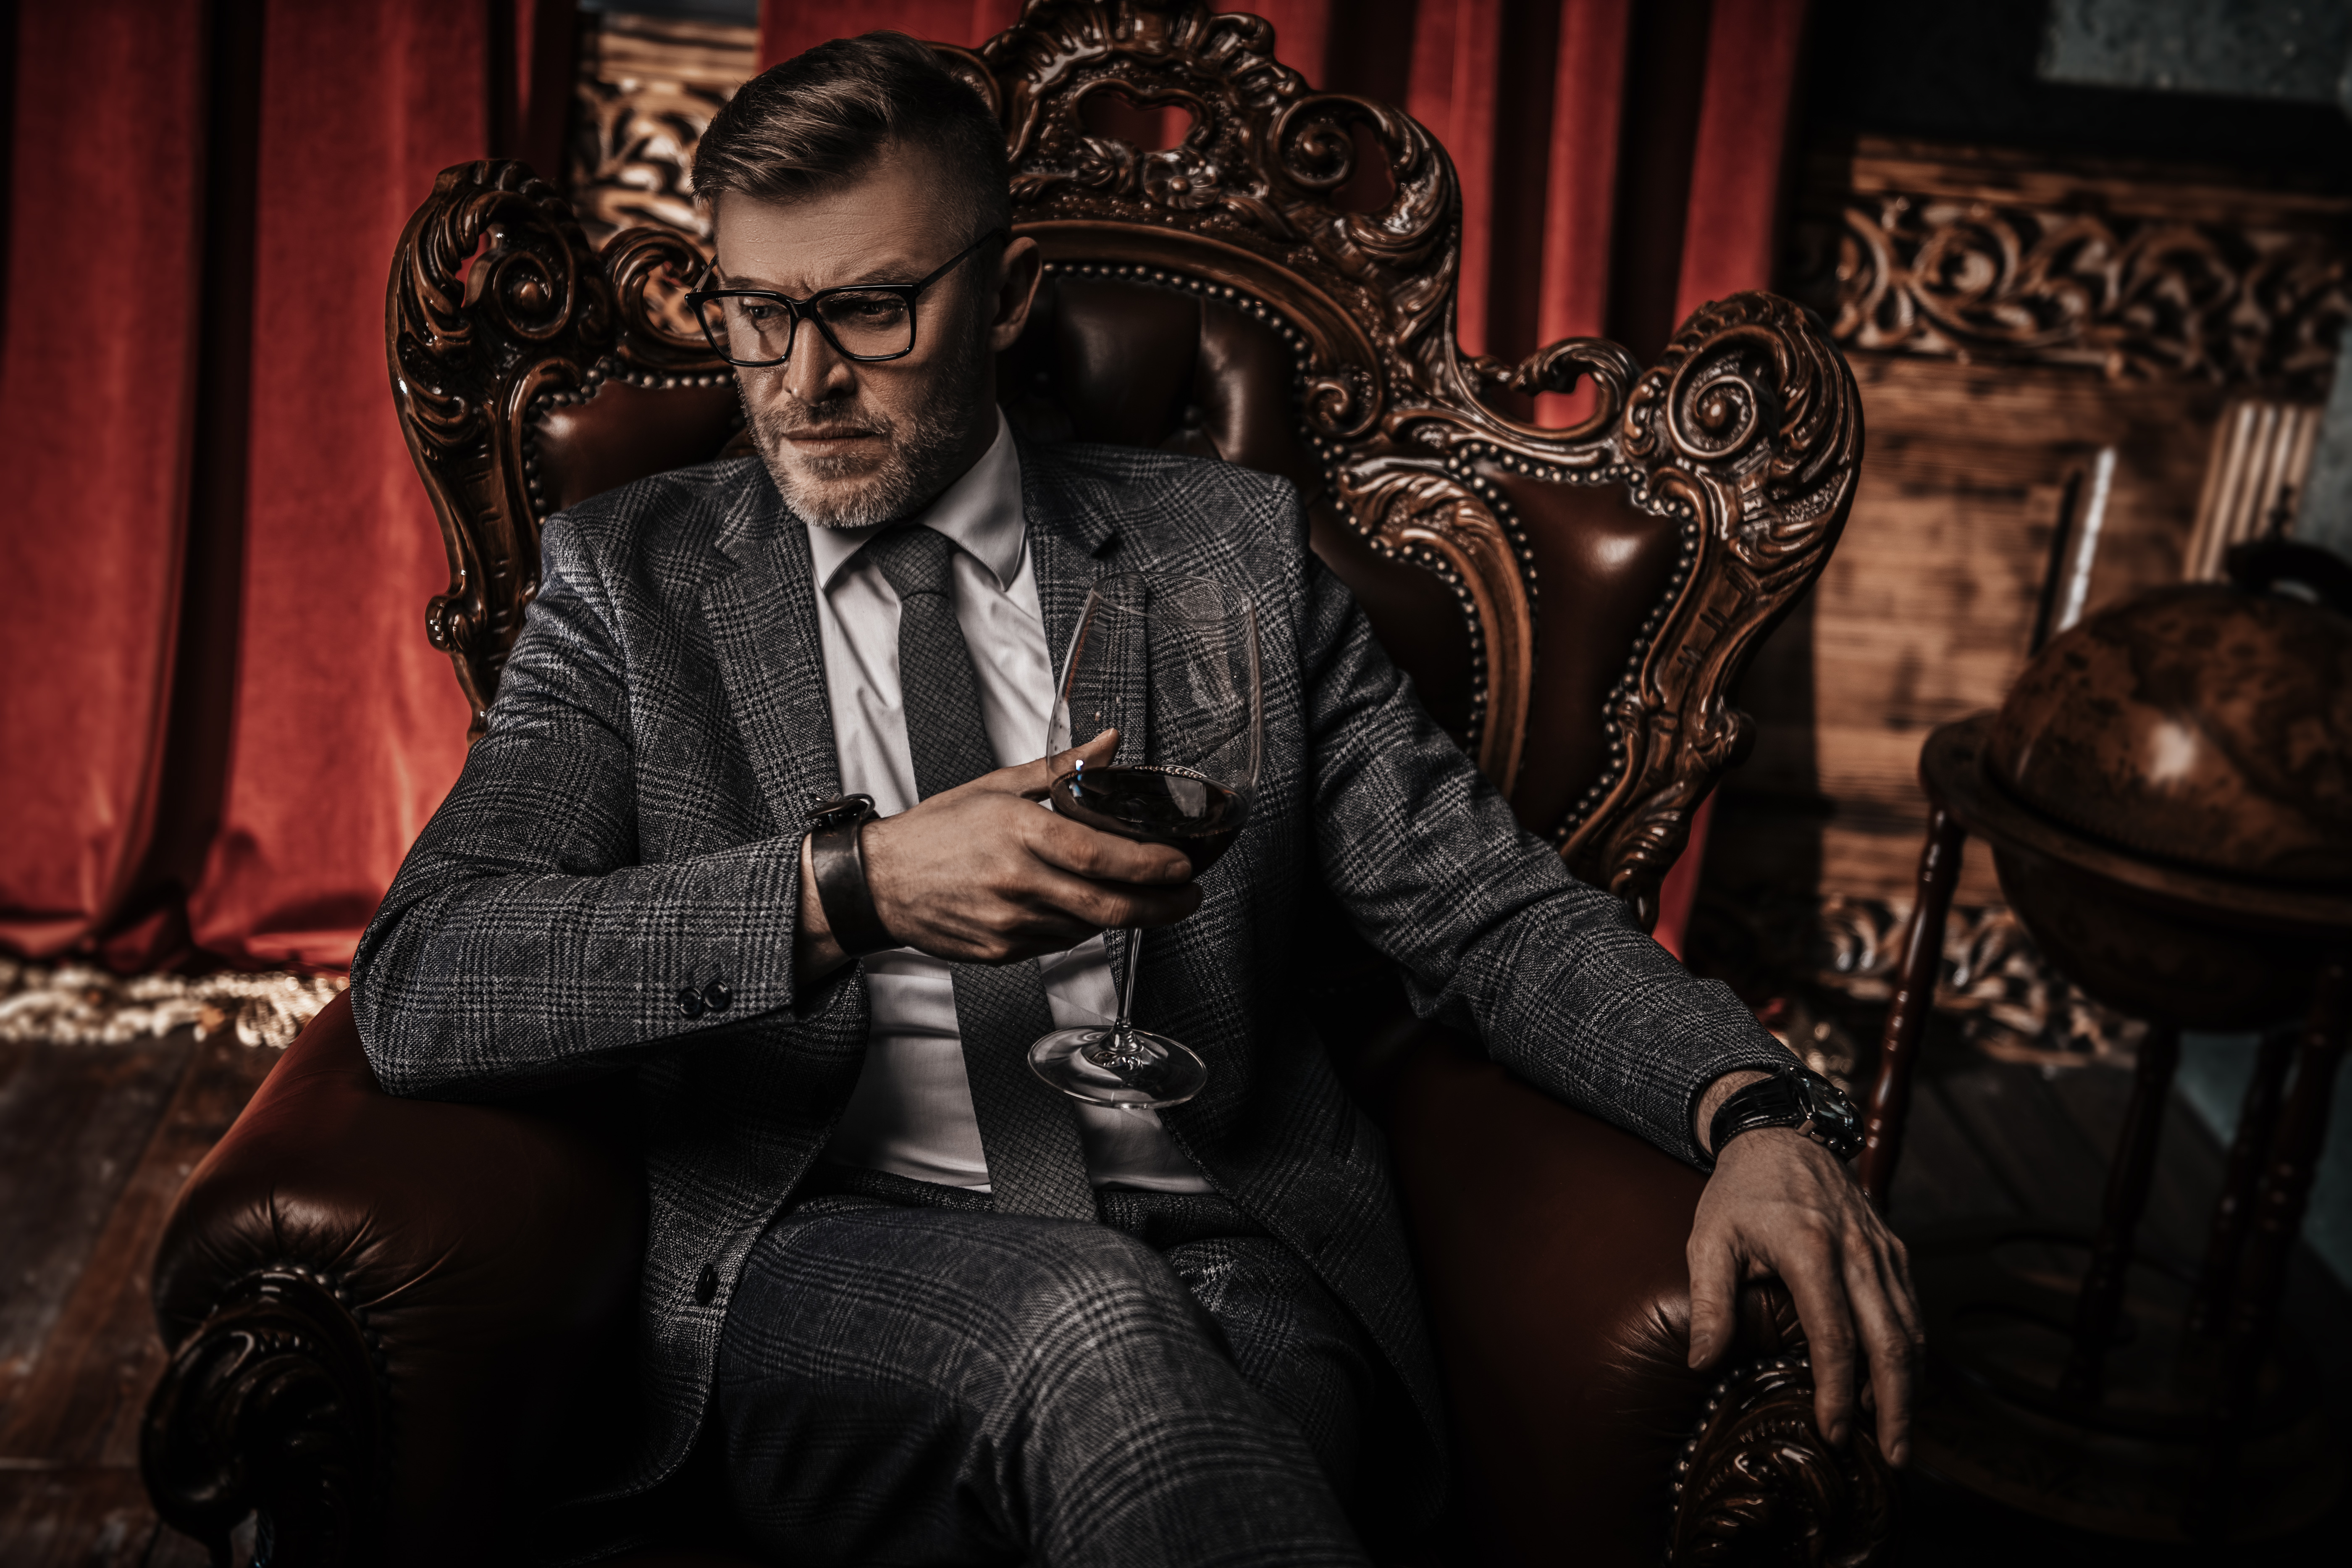 Retrato de un apuesto hombre maduro con traje formal bebiendo vino en el sillón de un interior clásico. | Fuente: Shutterstock